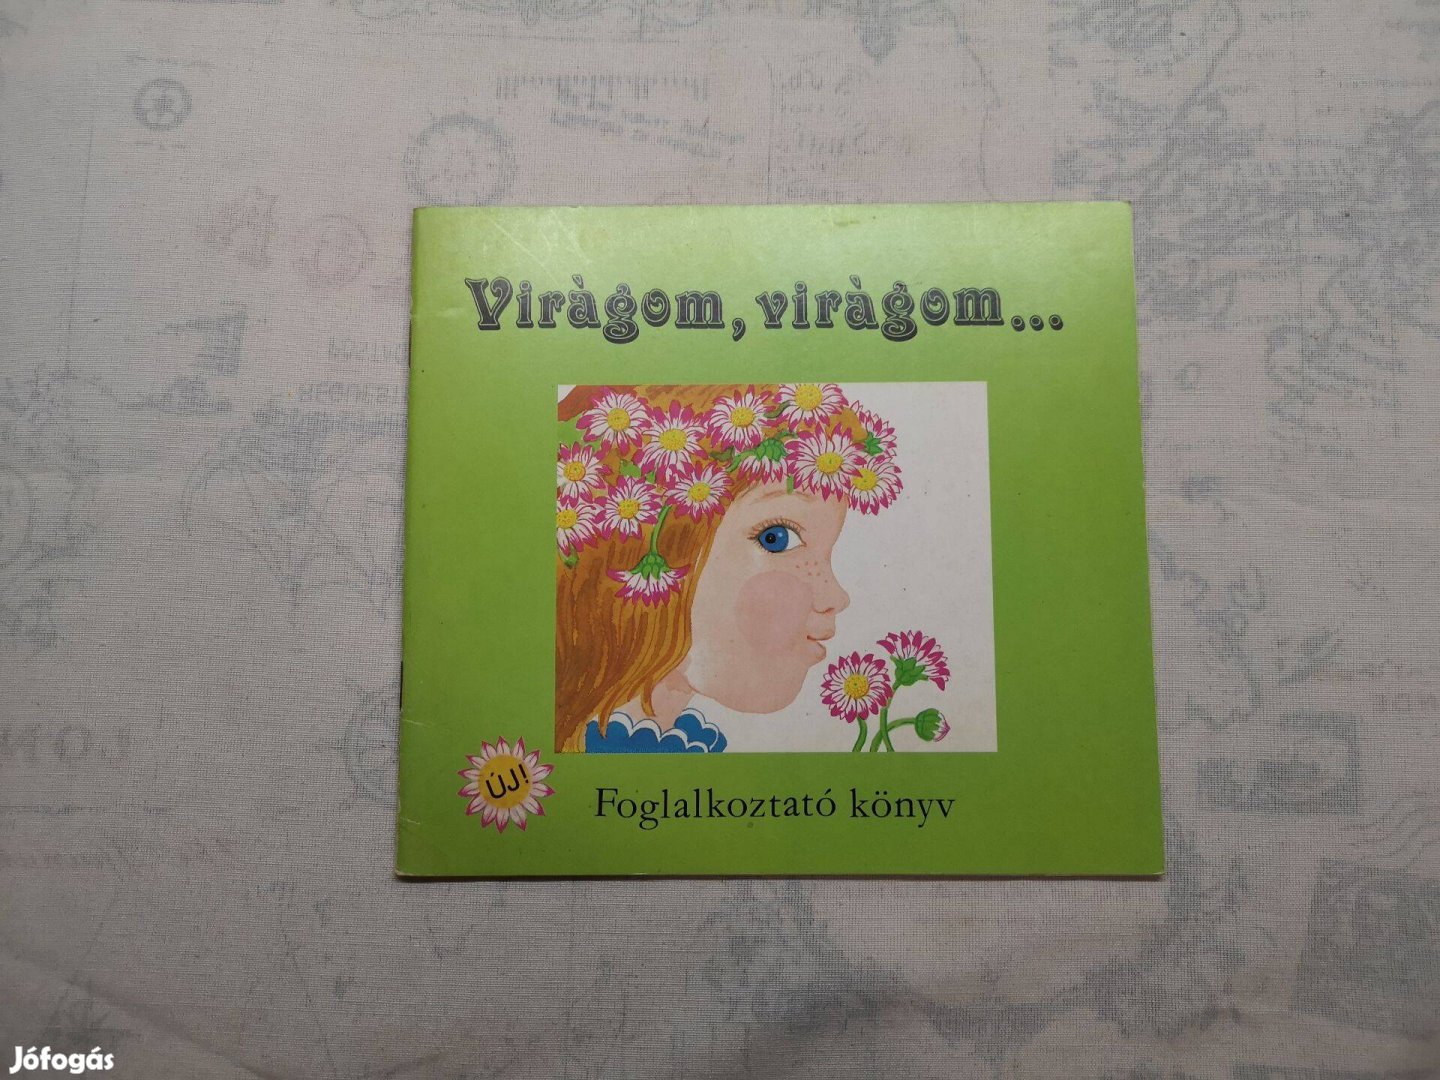 Kun Magda - Virágom, virágom. - Foglalkoztató könyv